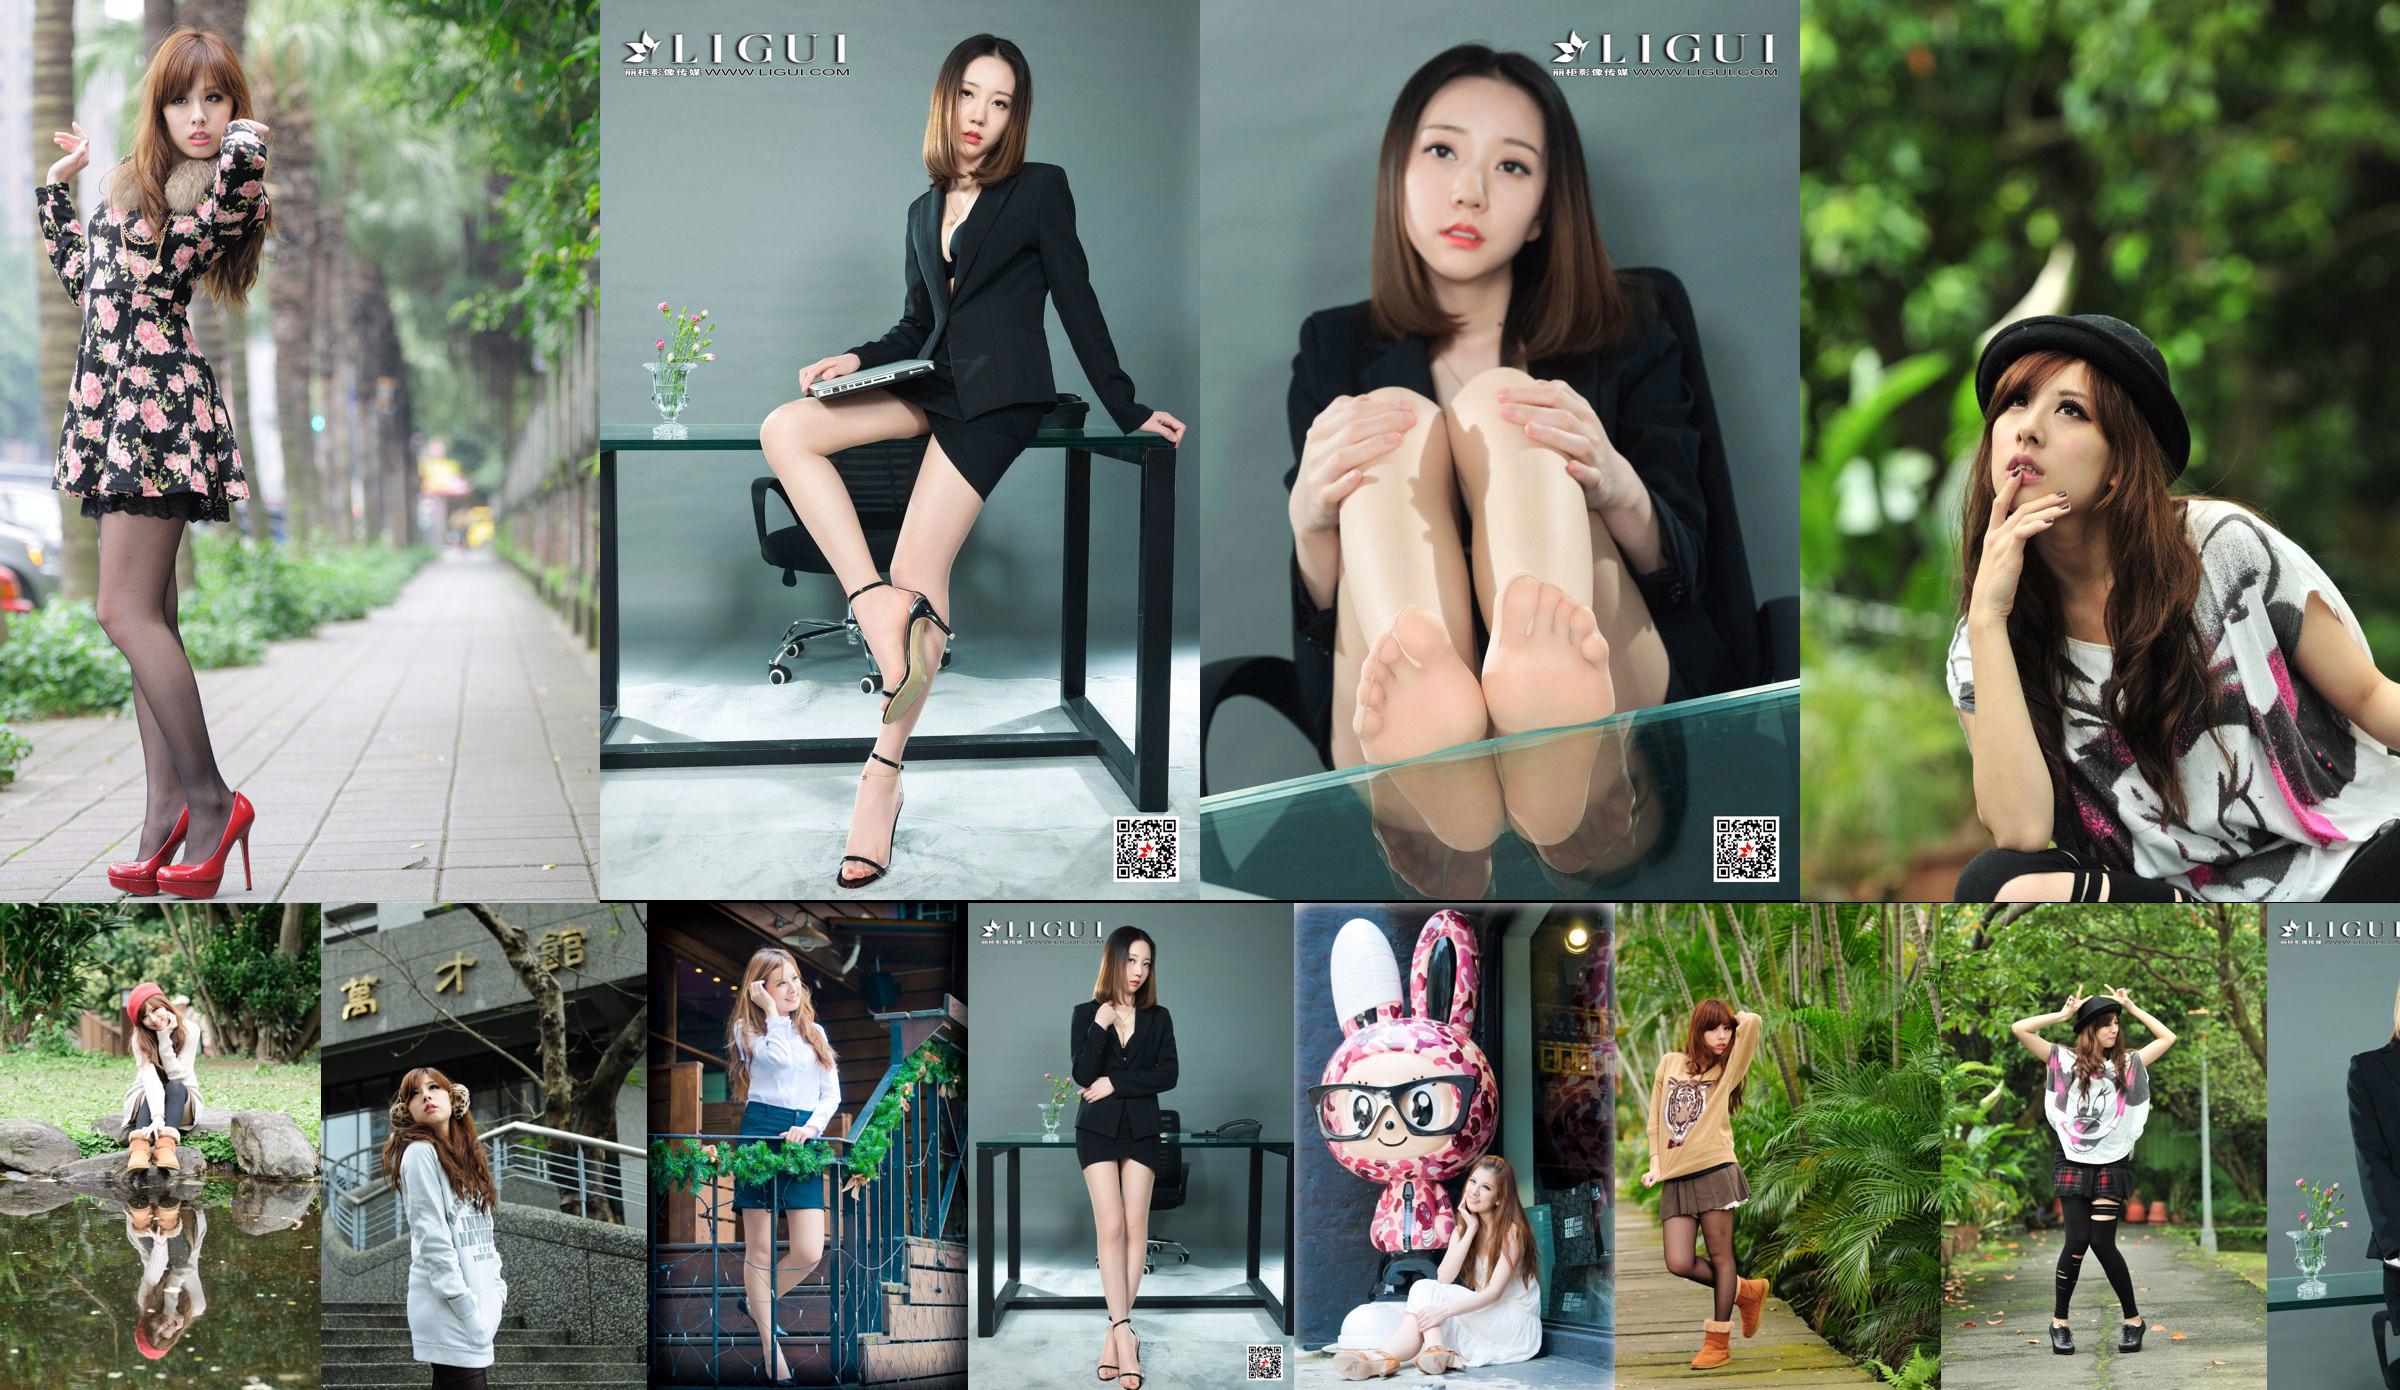 La modelo de belleza taiwanesa Xiaomi Kate su foto fresca en la calle No.eddd23 Página 1